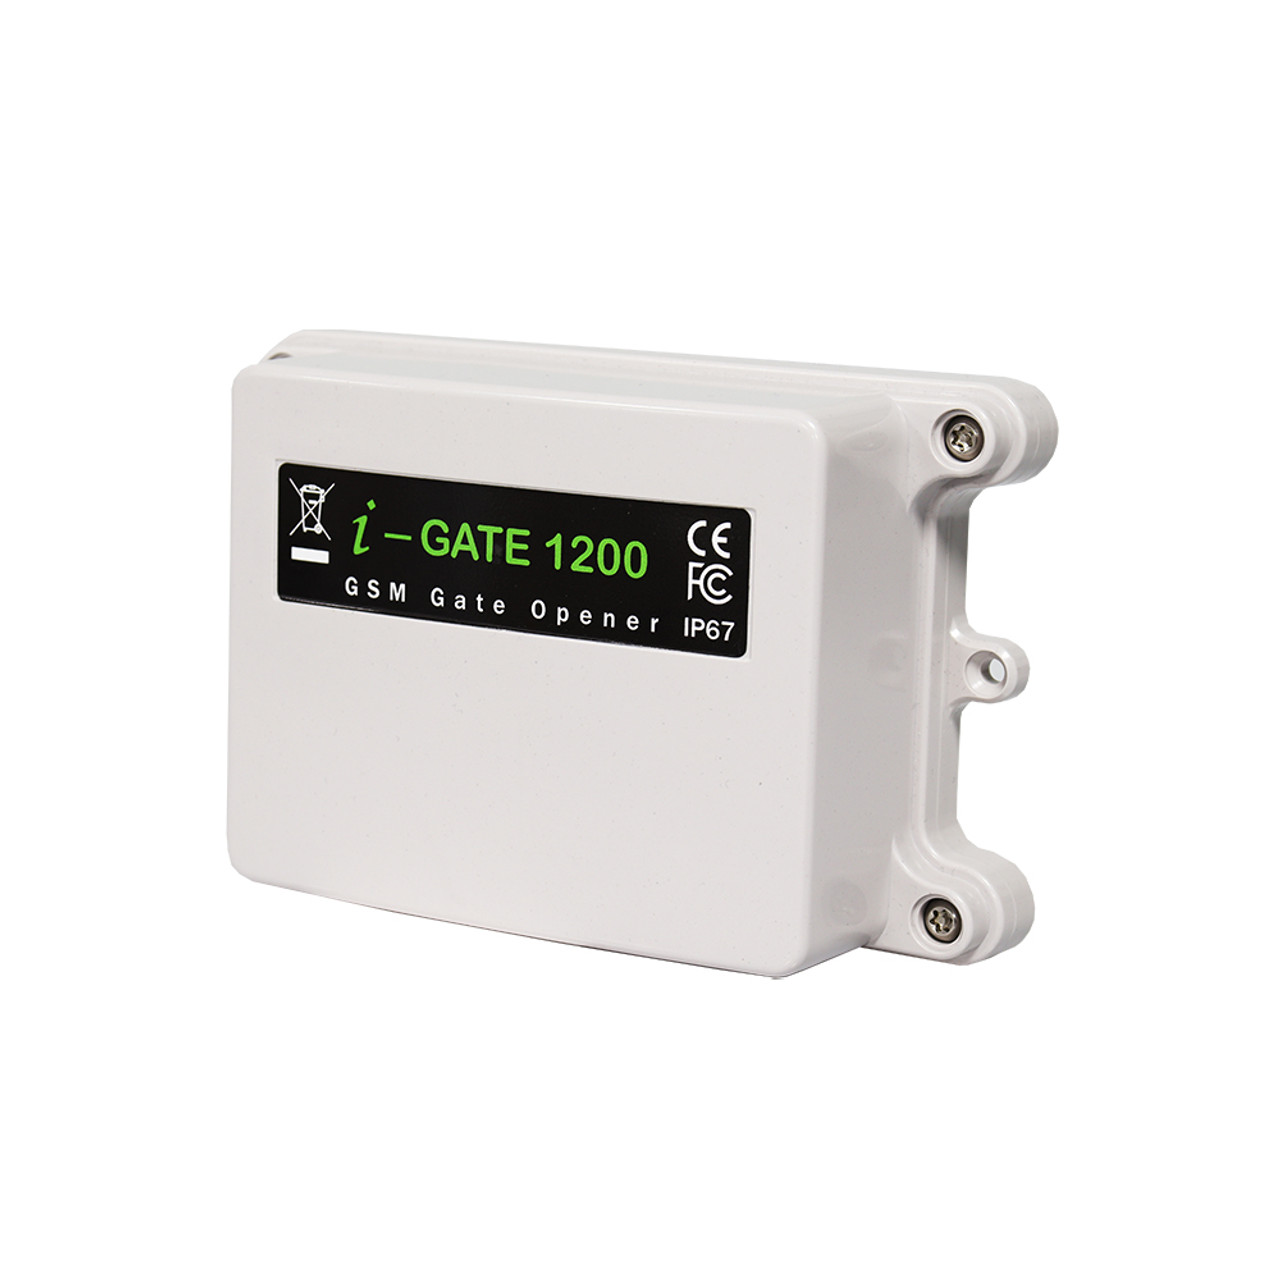 I-GATE-1200 ADVANCED GSM GATE OPENER (2G/4G)